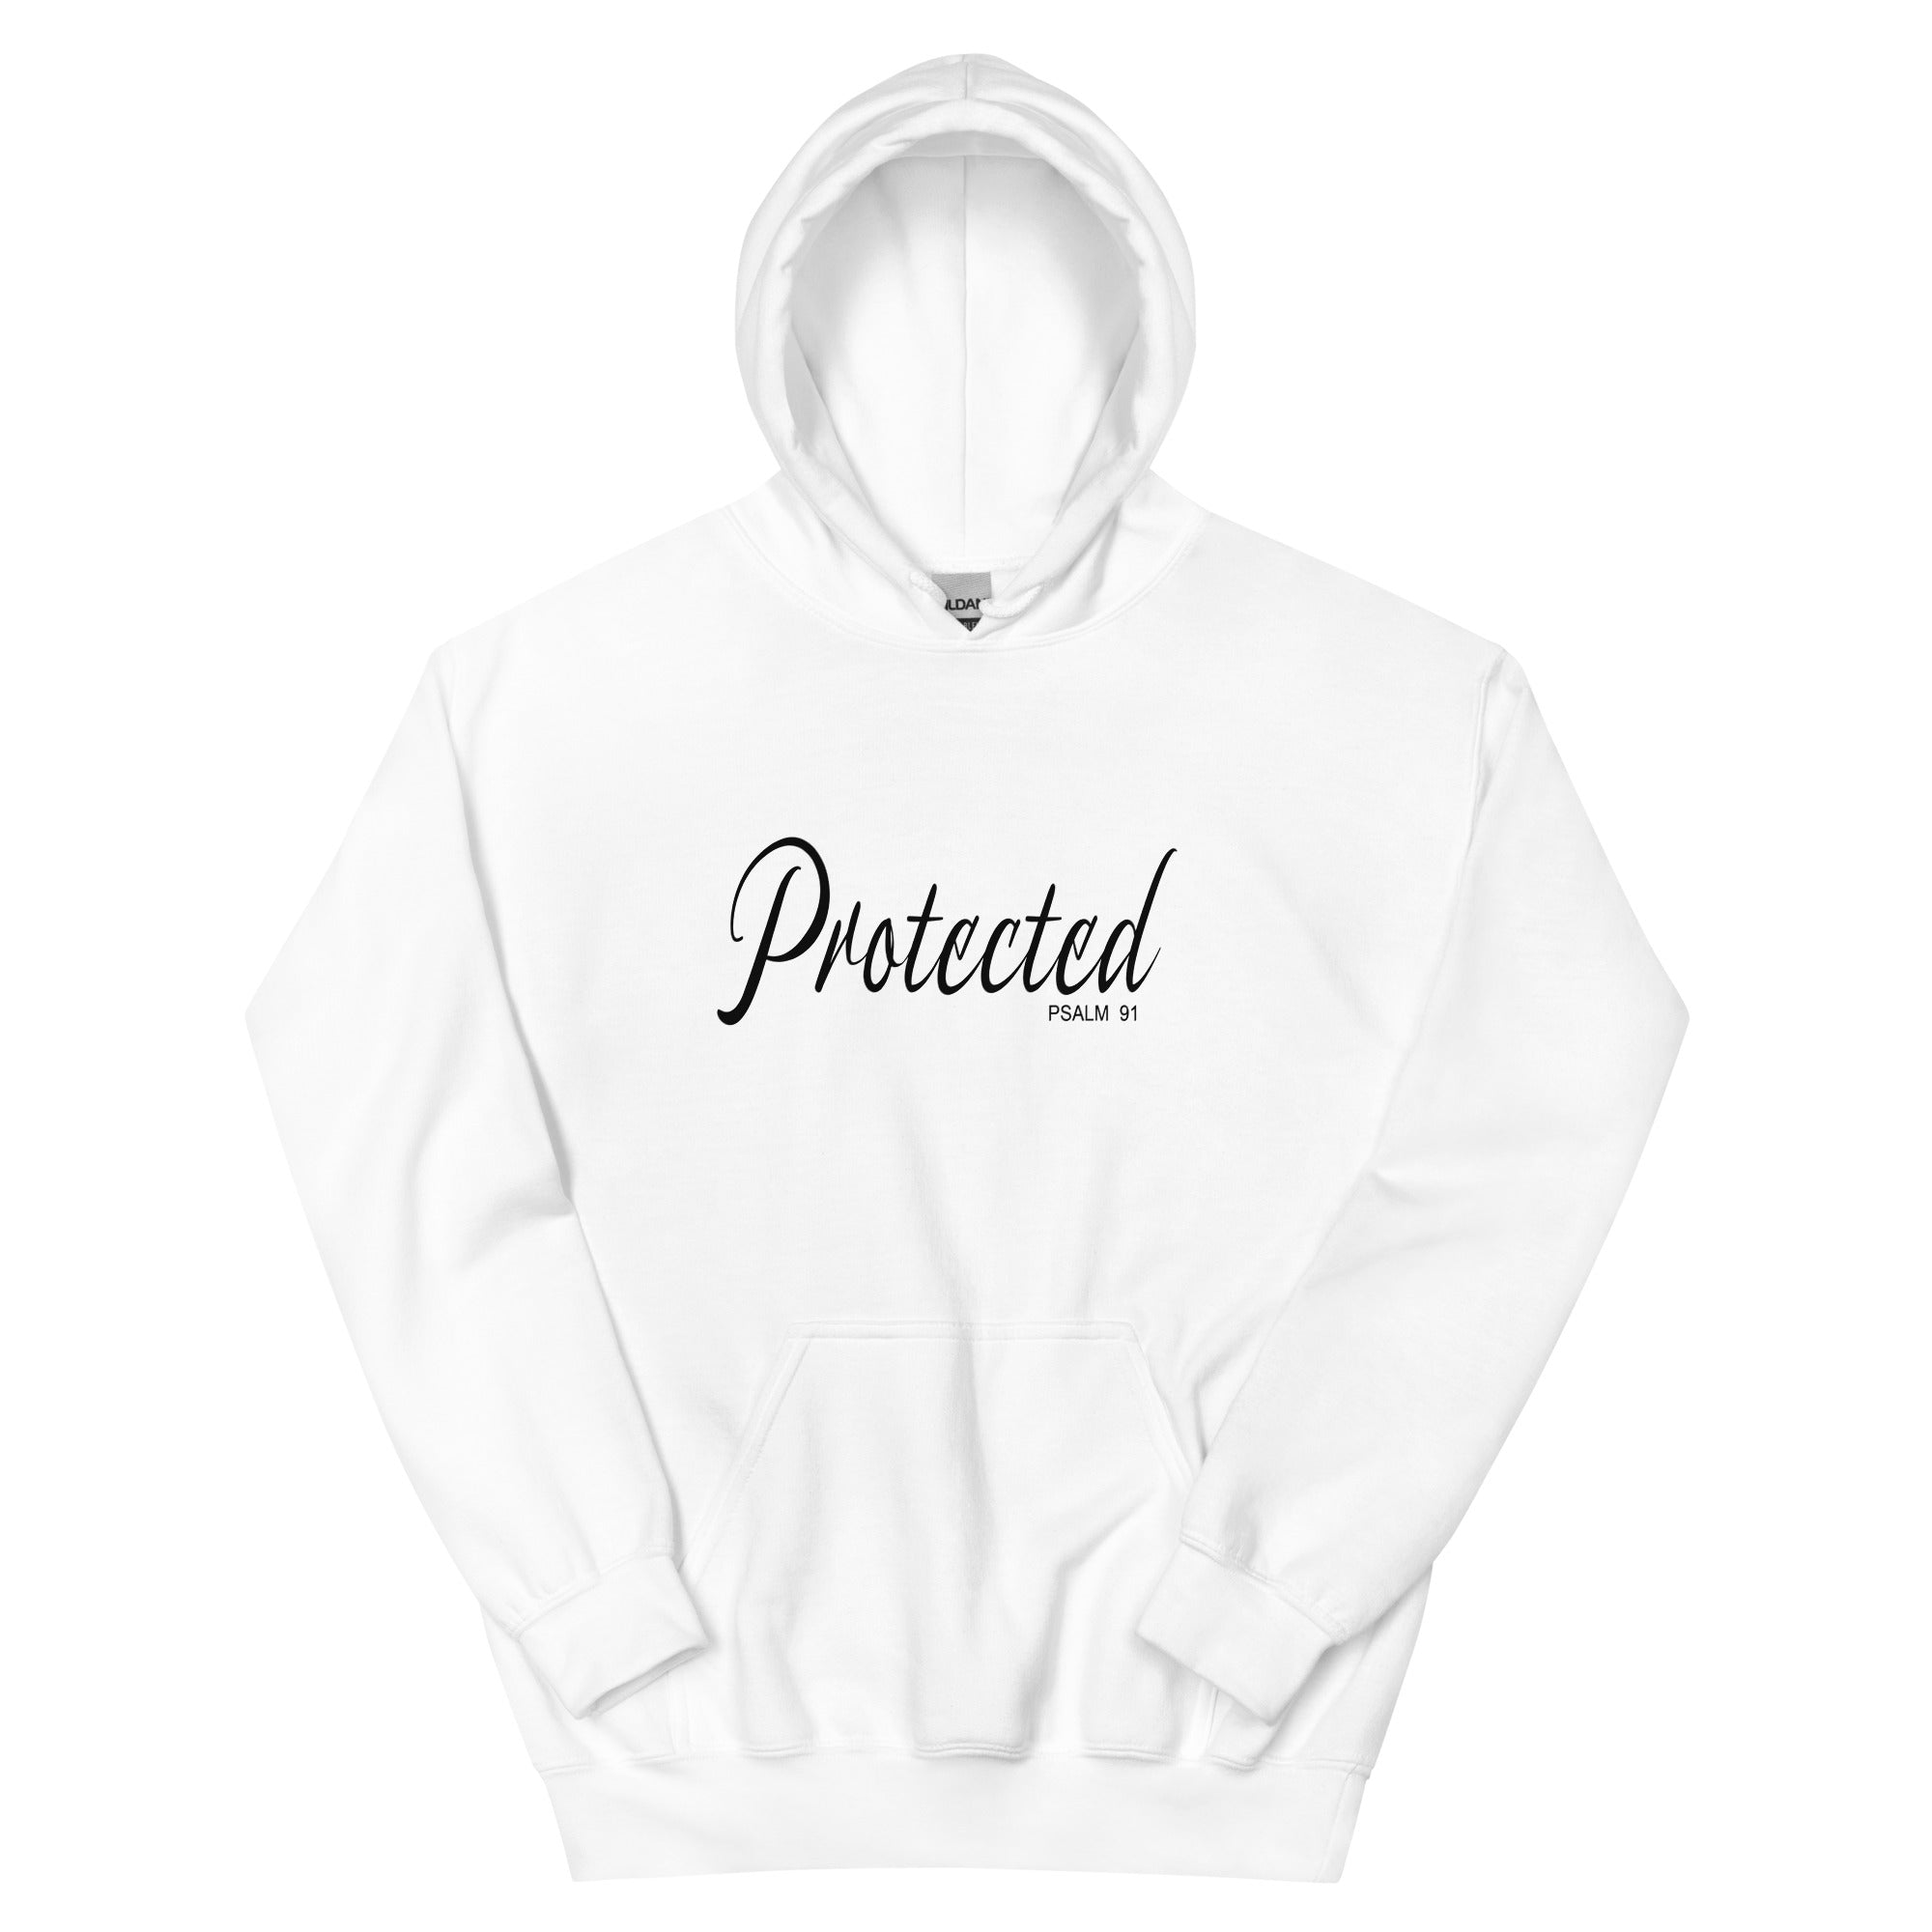 Protected - Unisex Hoodie